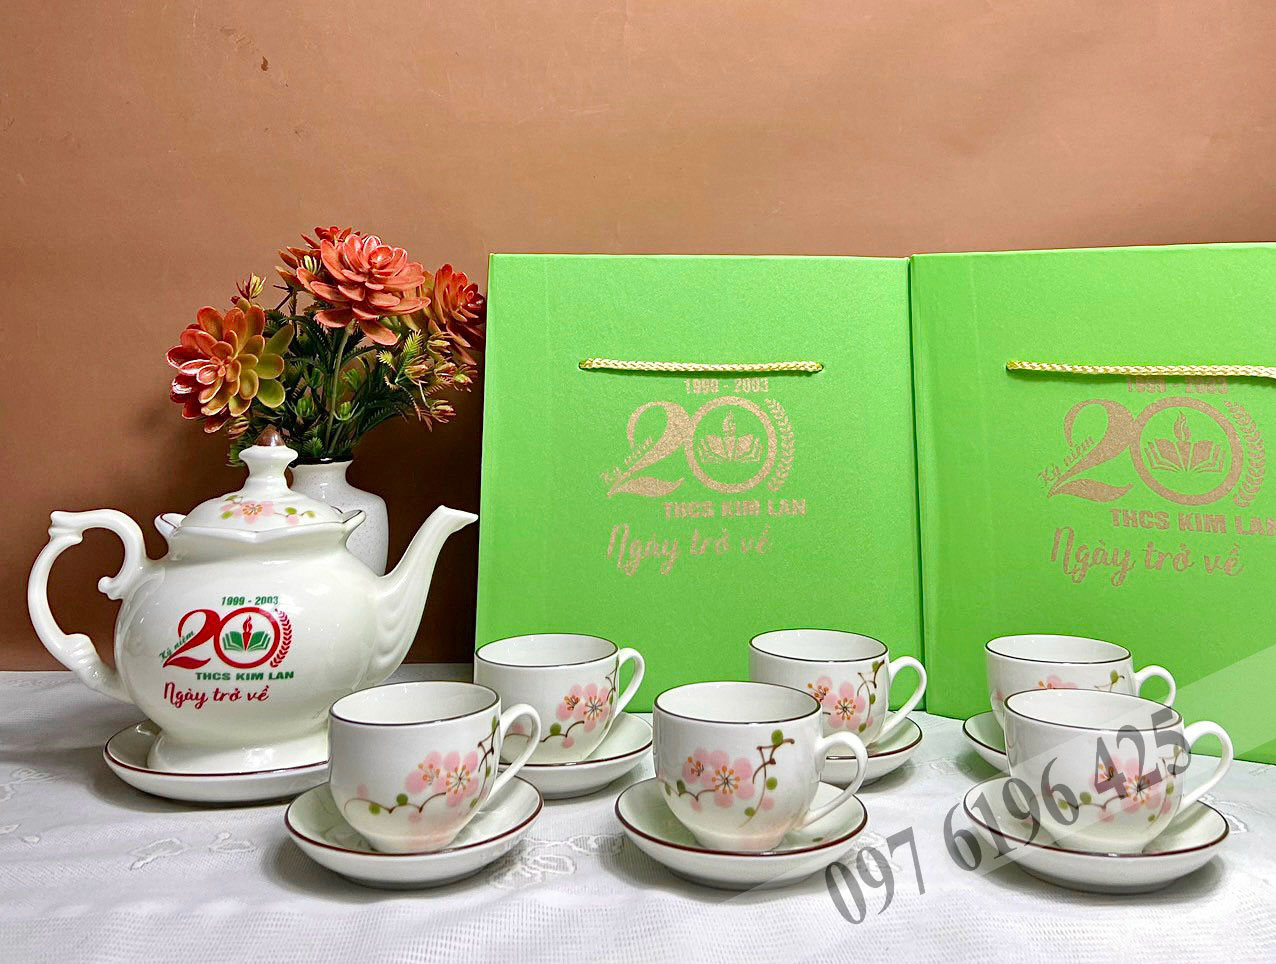 Bộ trà in logo ngày ra trường dáng phú quý vẽ đào hồng